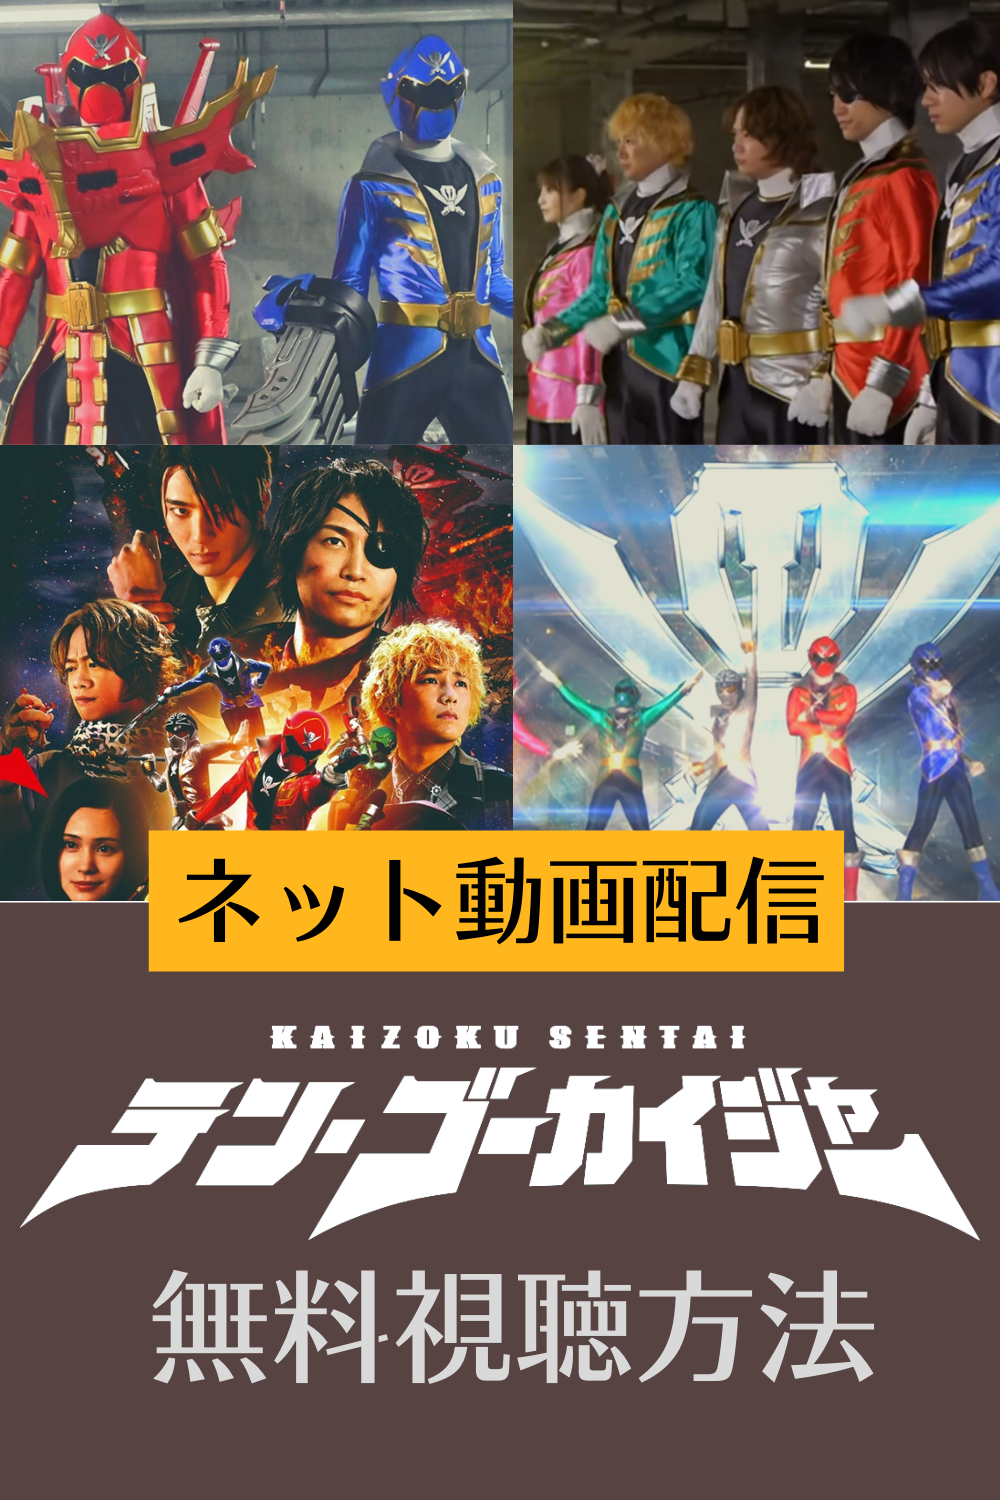 スーパー戦隊の映画「テン・ゴーカイジャー」の動画配信をmusic.jpで無料視聴する方法